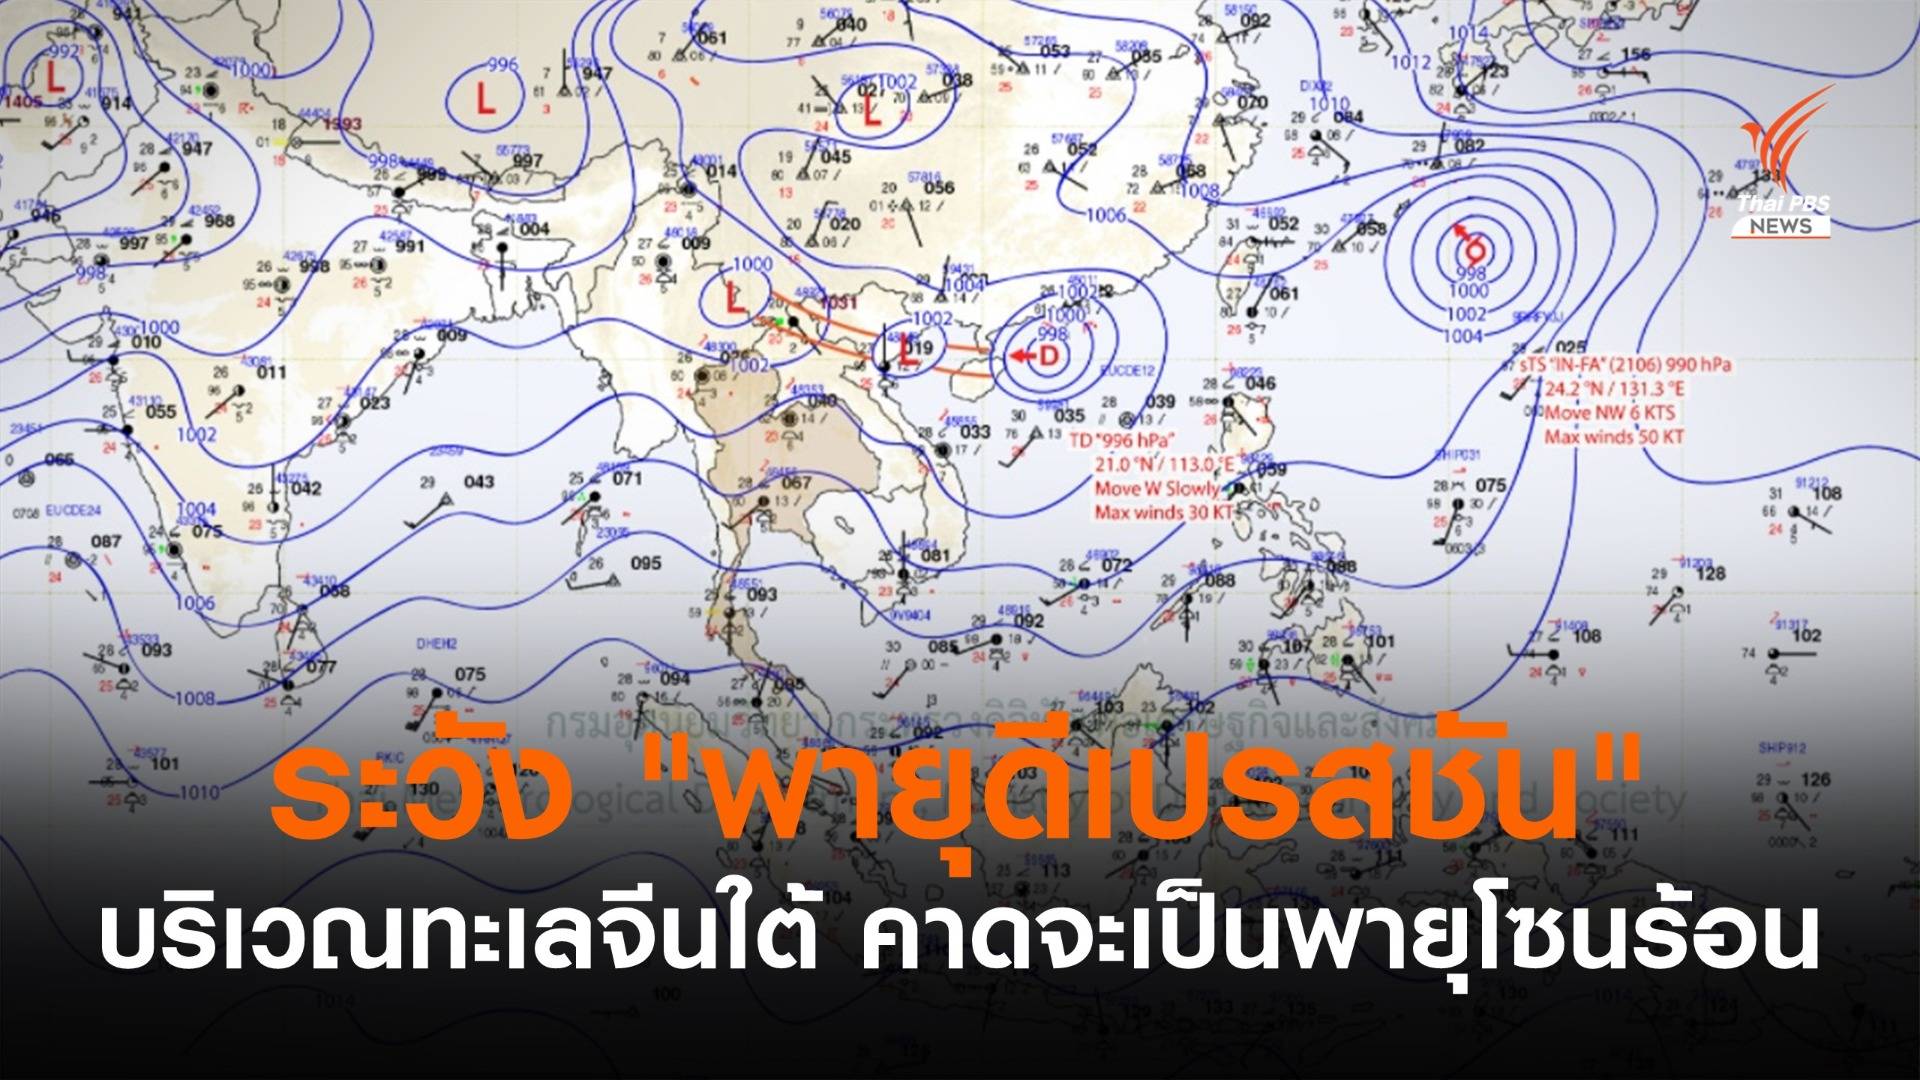 ประกาศ "พายุดีเปรสชัน" ฉบับที่ 1 คาดทวีกำลังเป็น "พายุโซนร้อน"